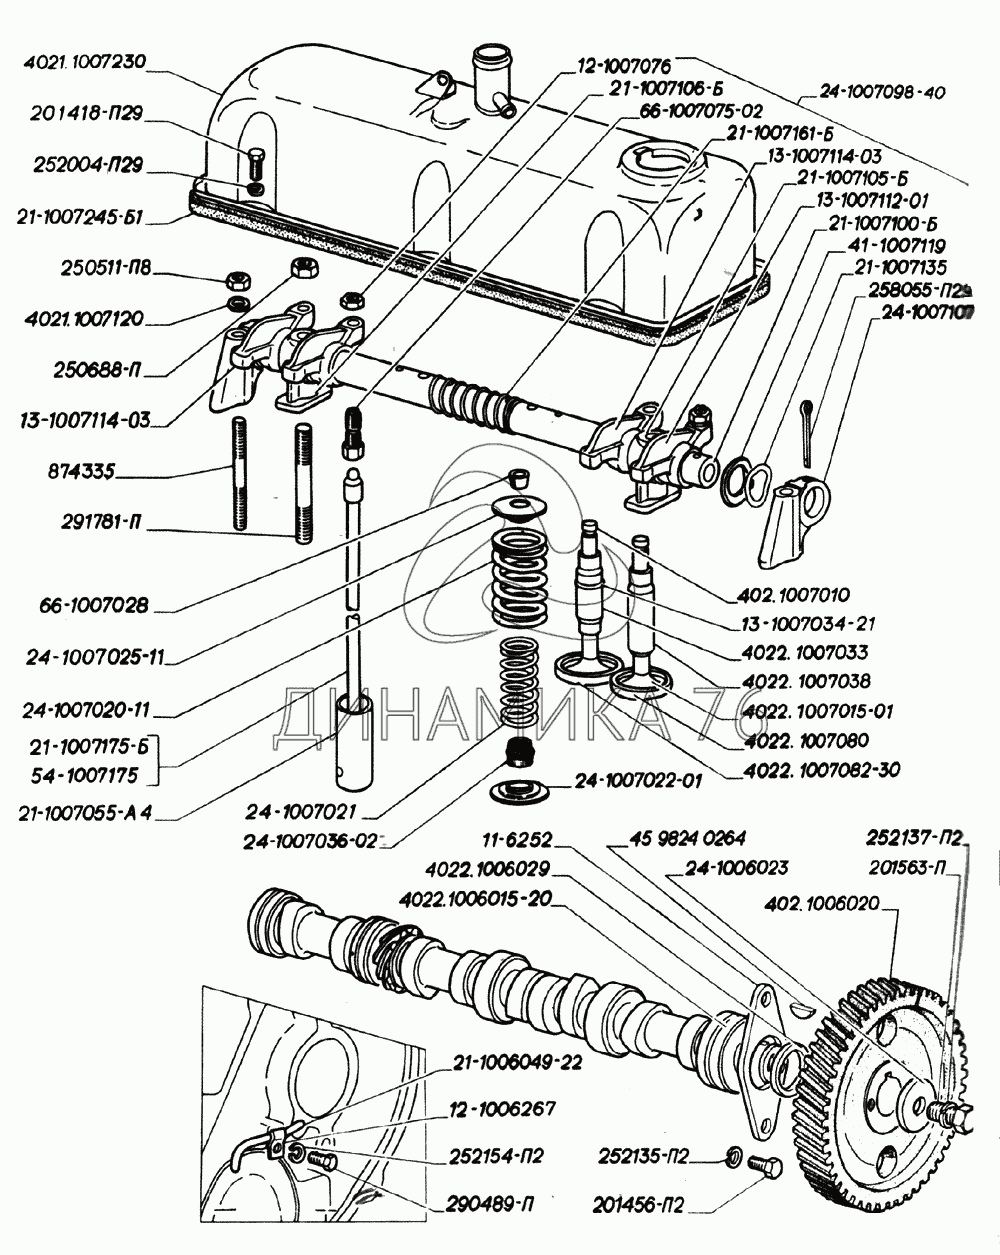 Схема электрооборудования двигателя ЗМЗ-402 ГАЗ 31105 (ГАЗ-31105 с двигателями ЗМЗ-402, 4062)